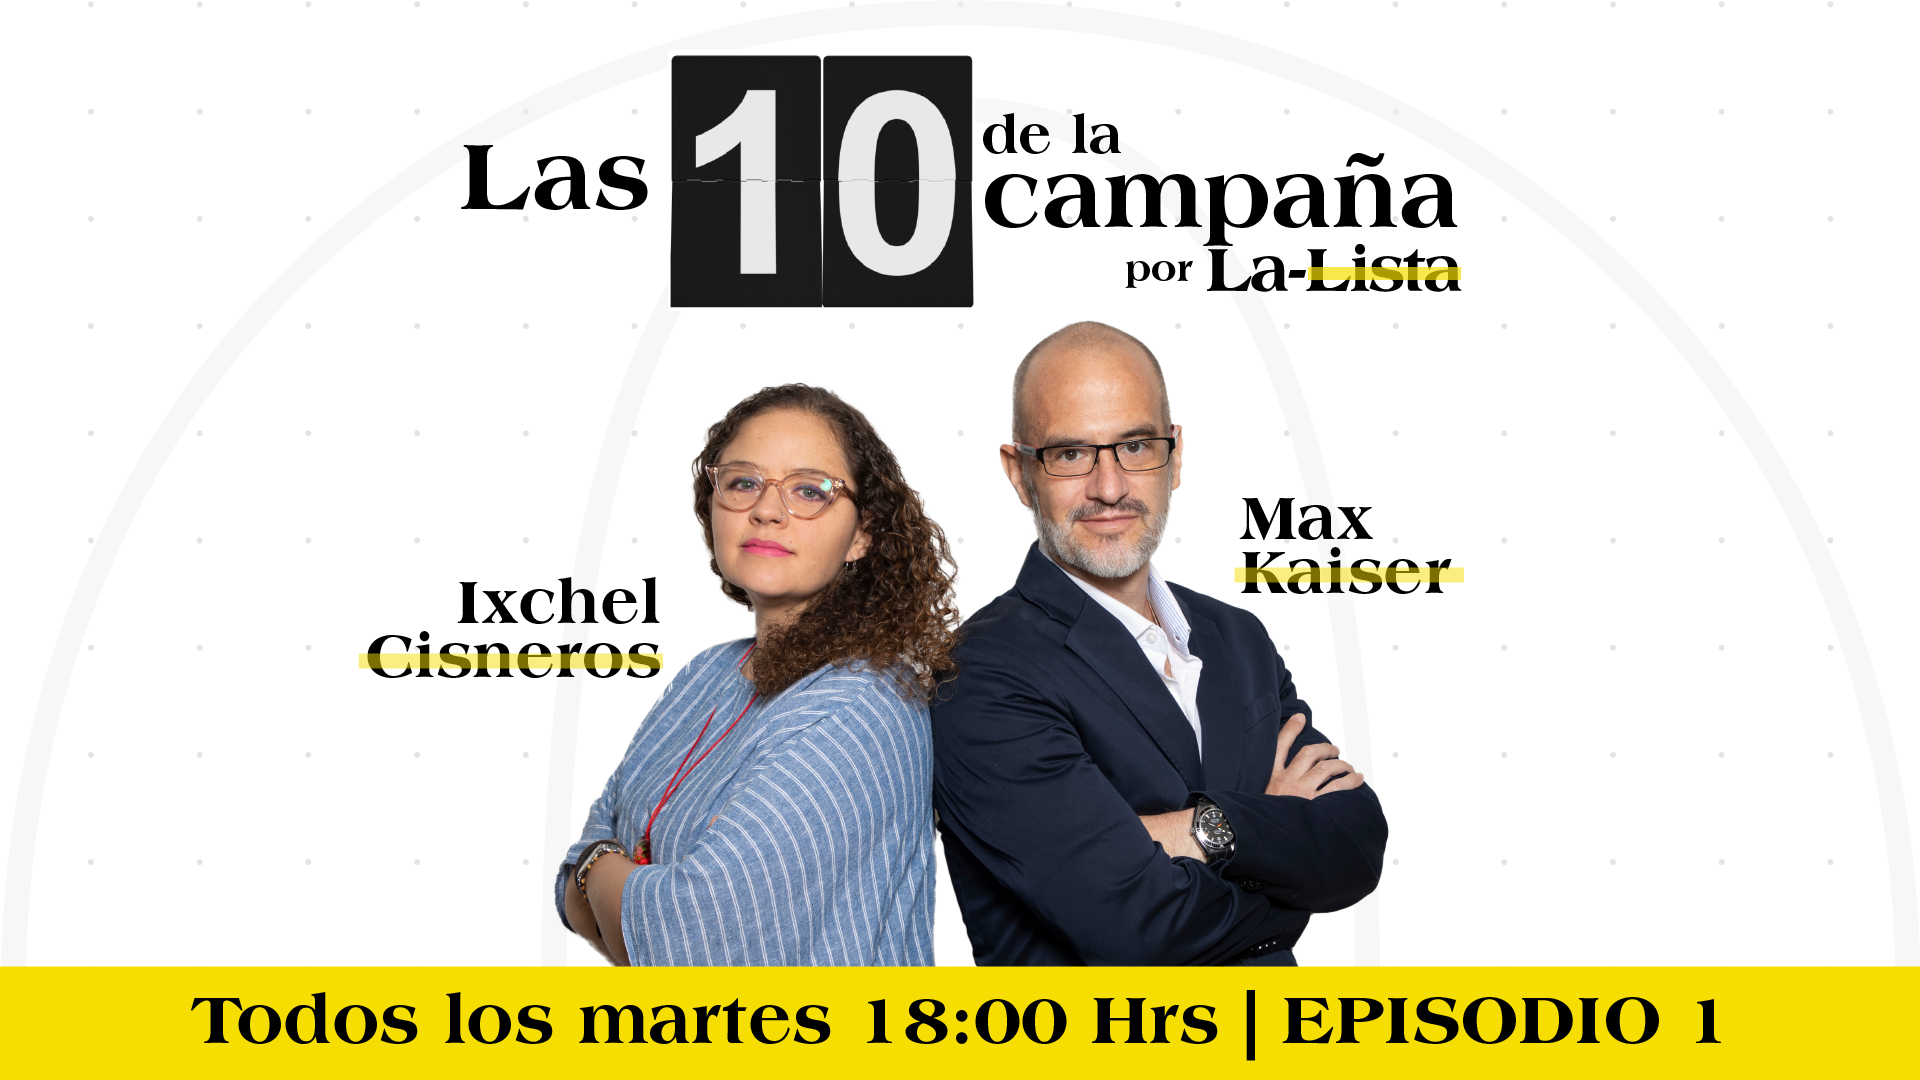 #Las10DeLaCampaña con Max Kaiser e Ixchel Cisneros